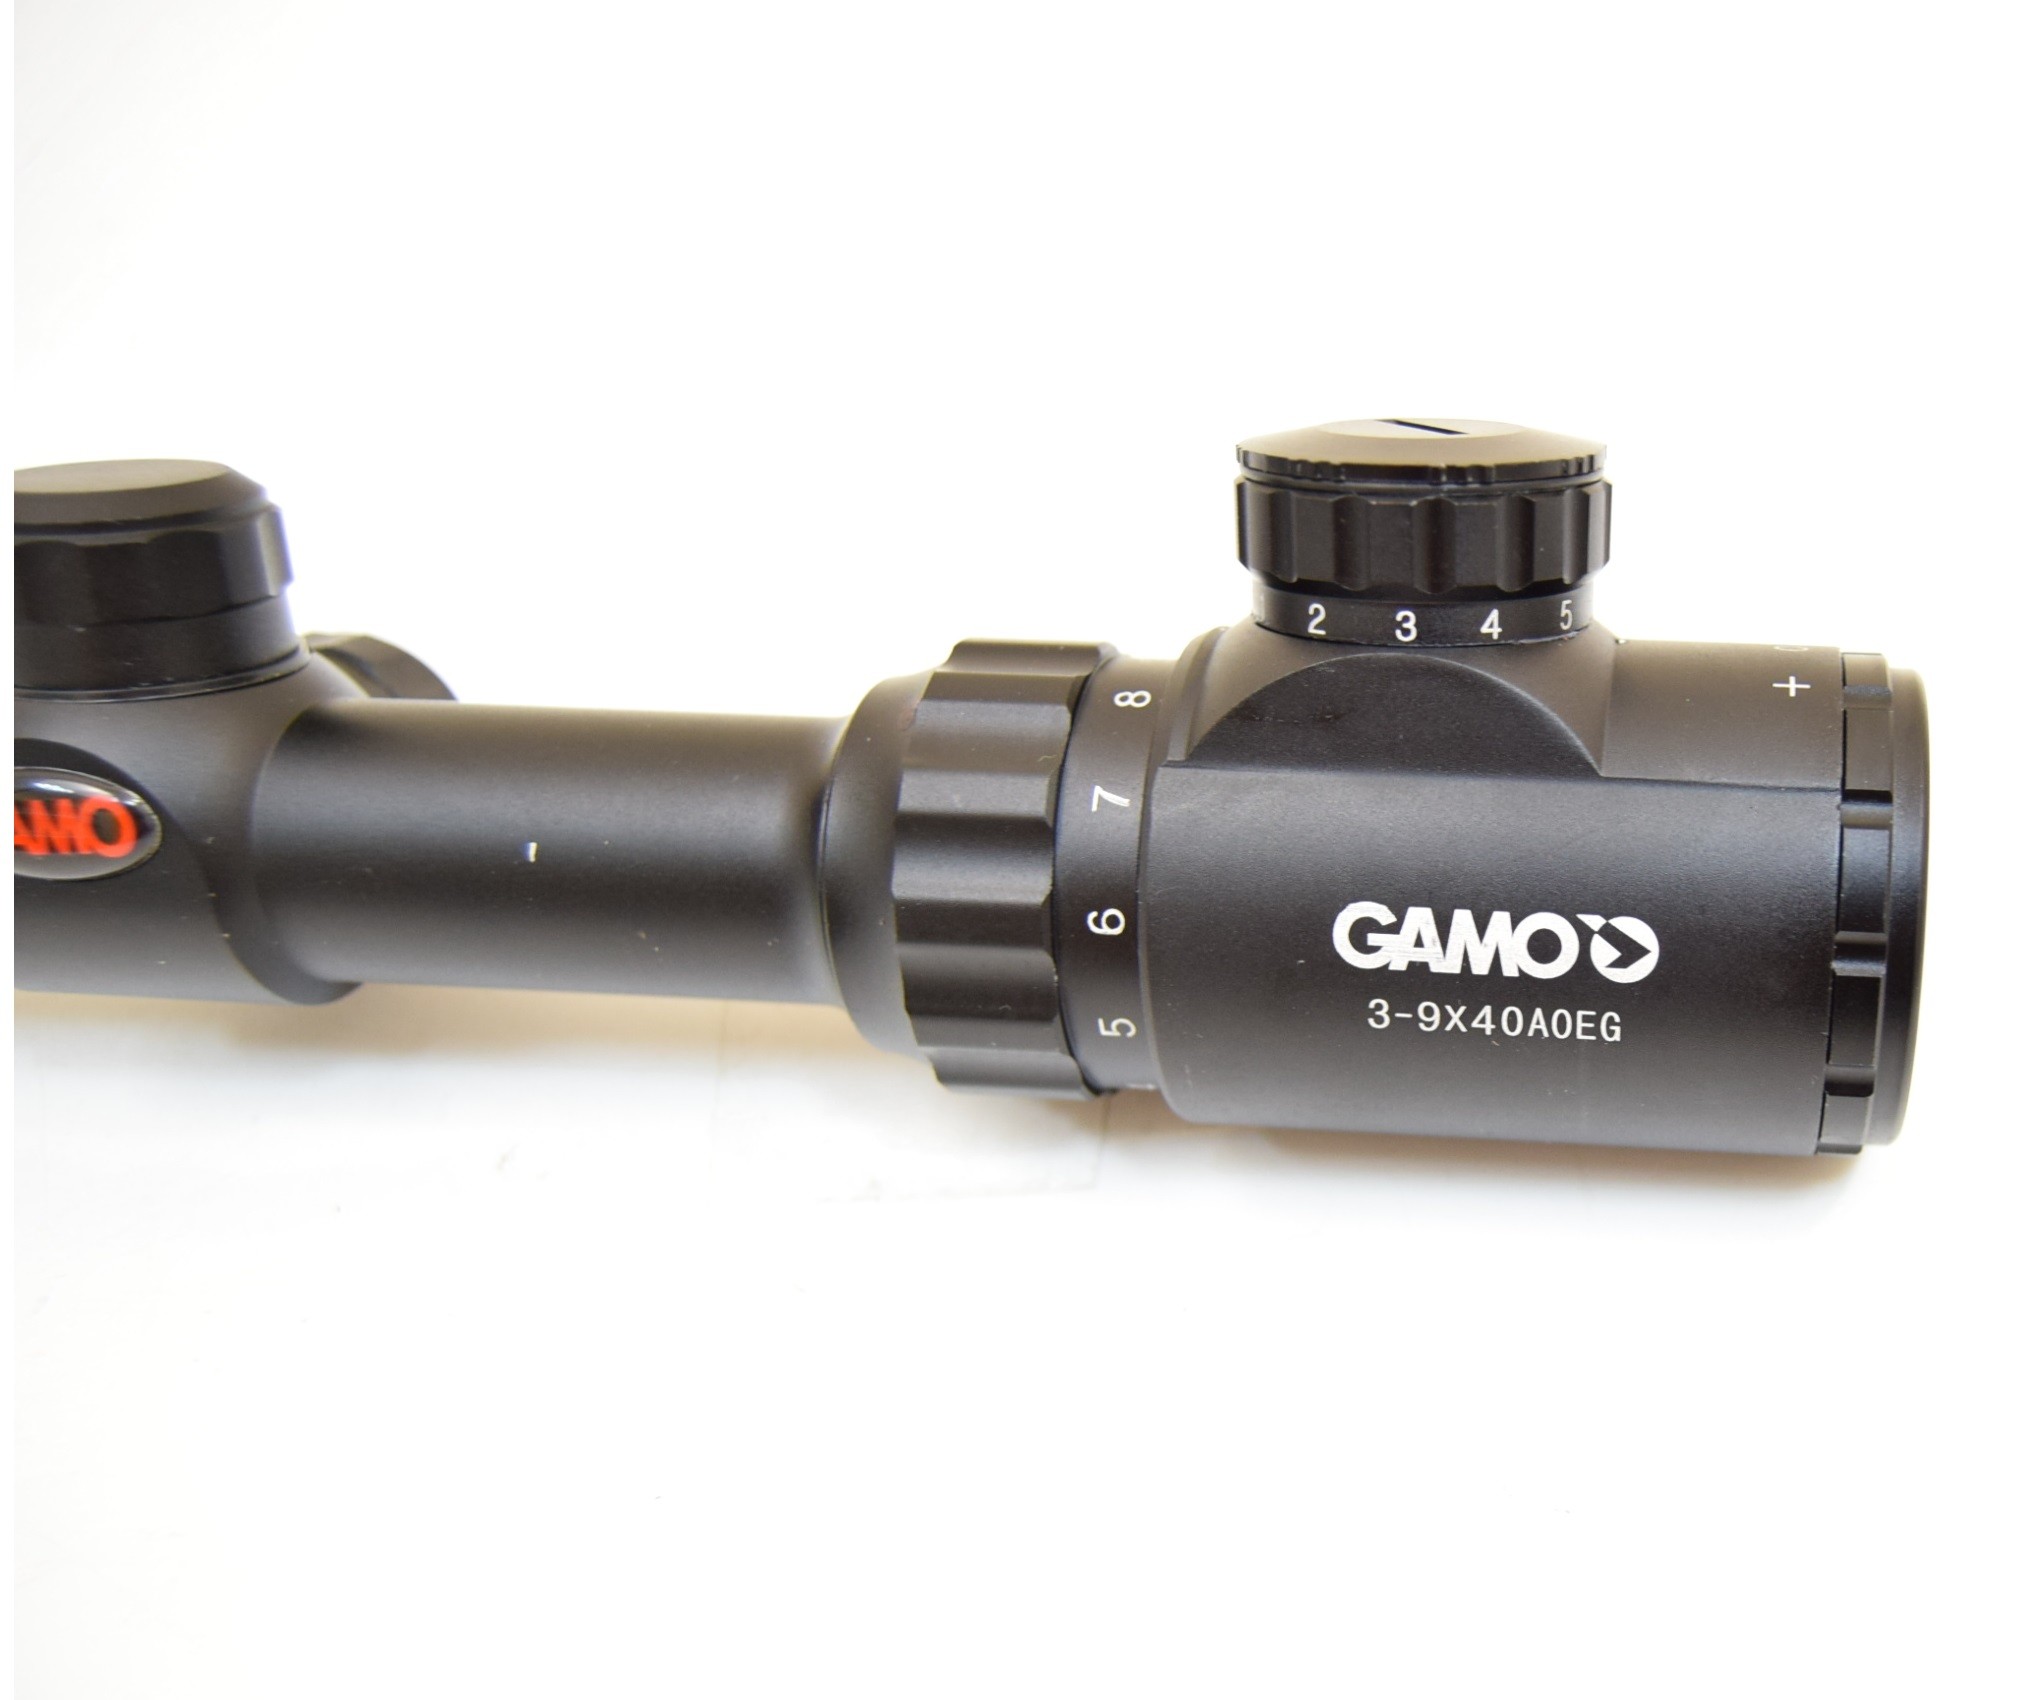 Оптический прицел Gamo 3-9x40 AOEG, с подсветкой, изображение 4